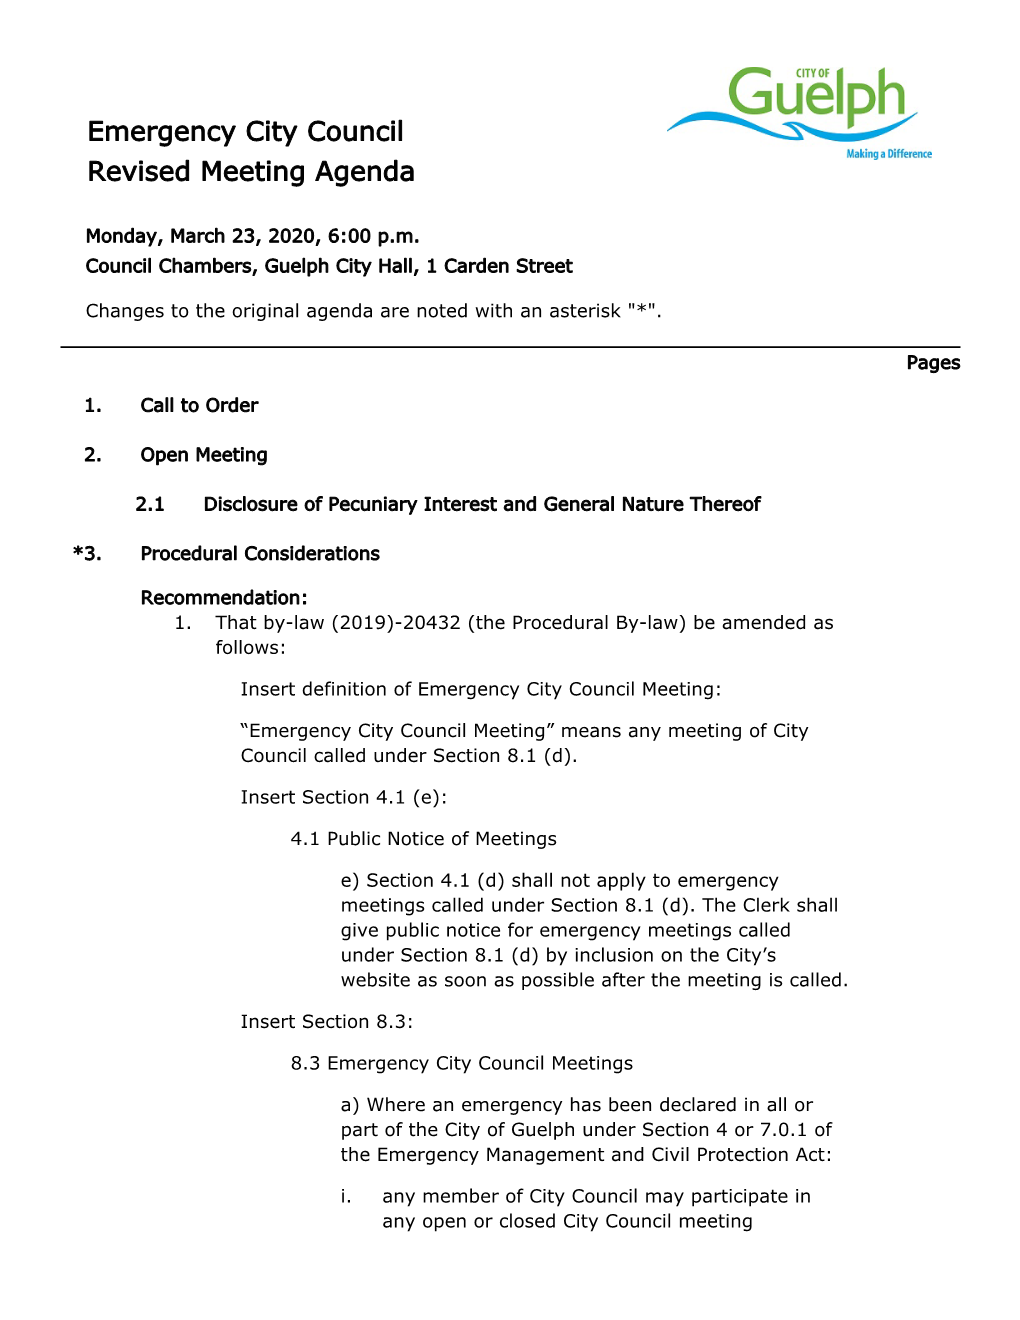 Guelph City Council Agenda